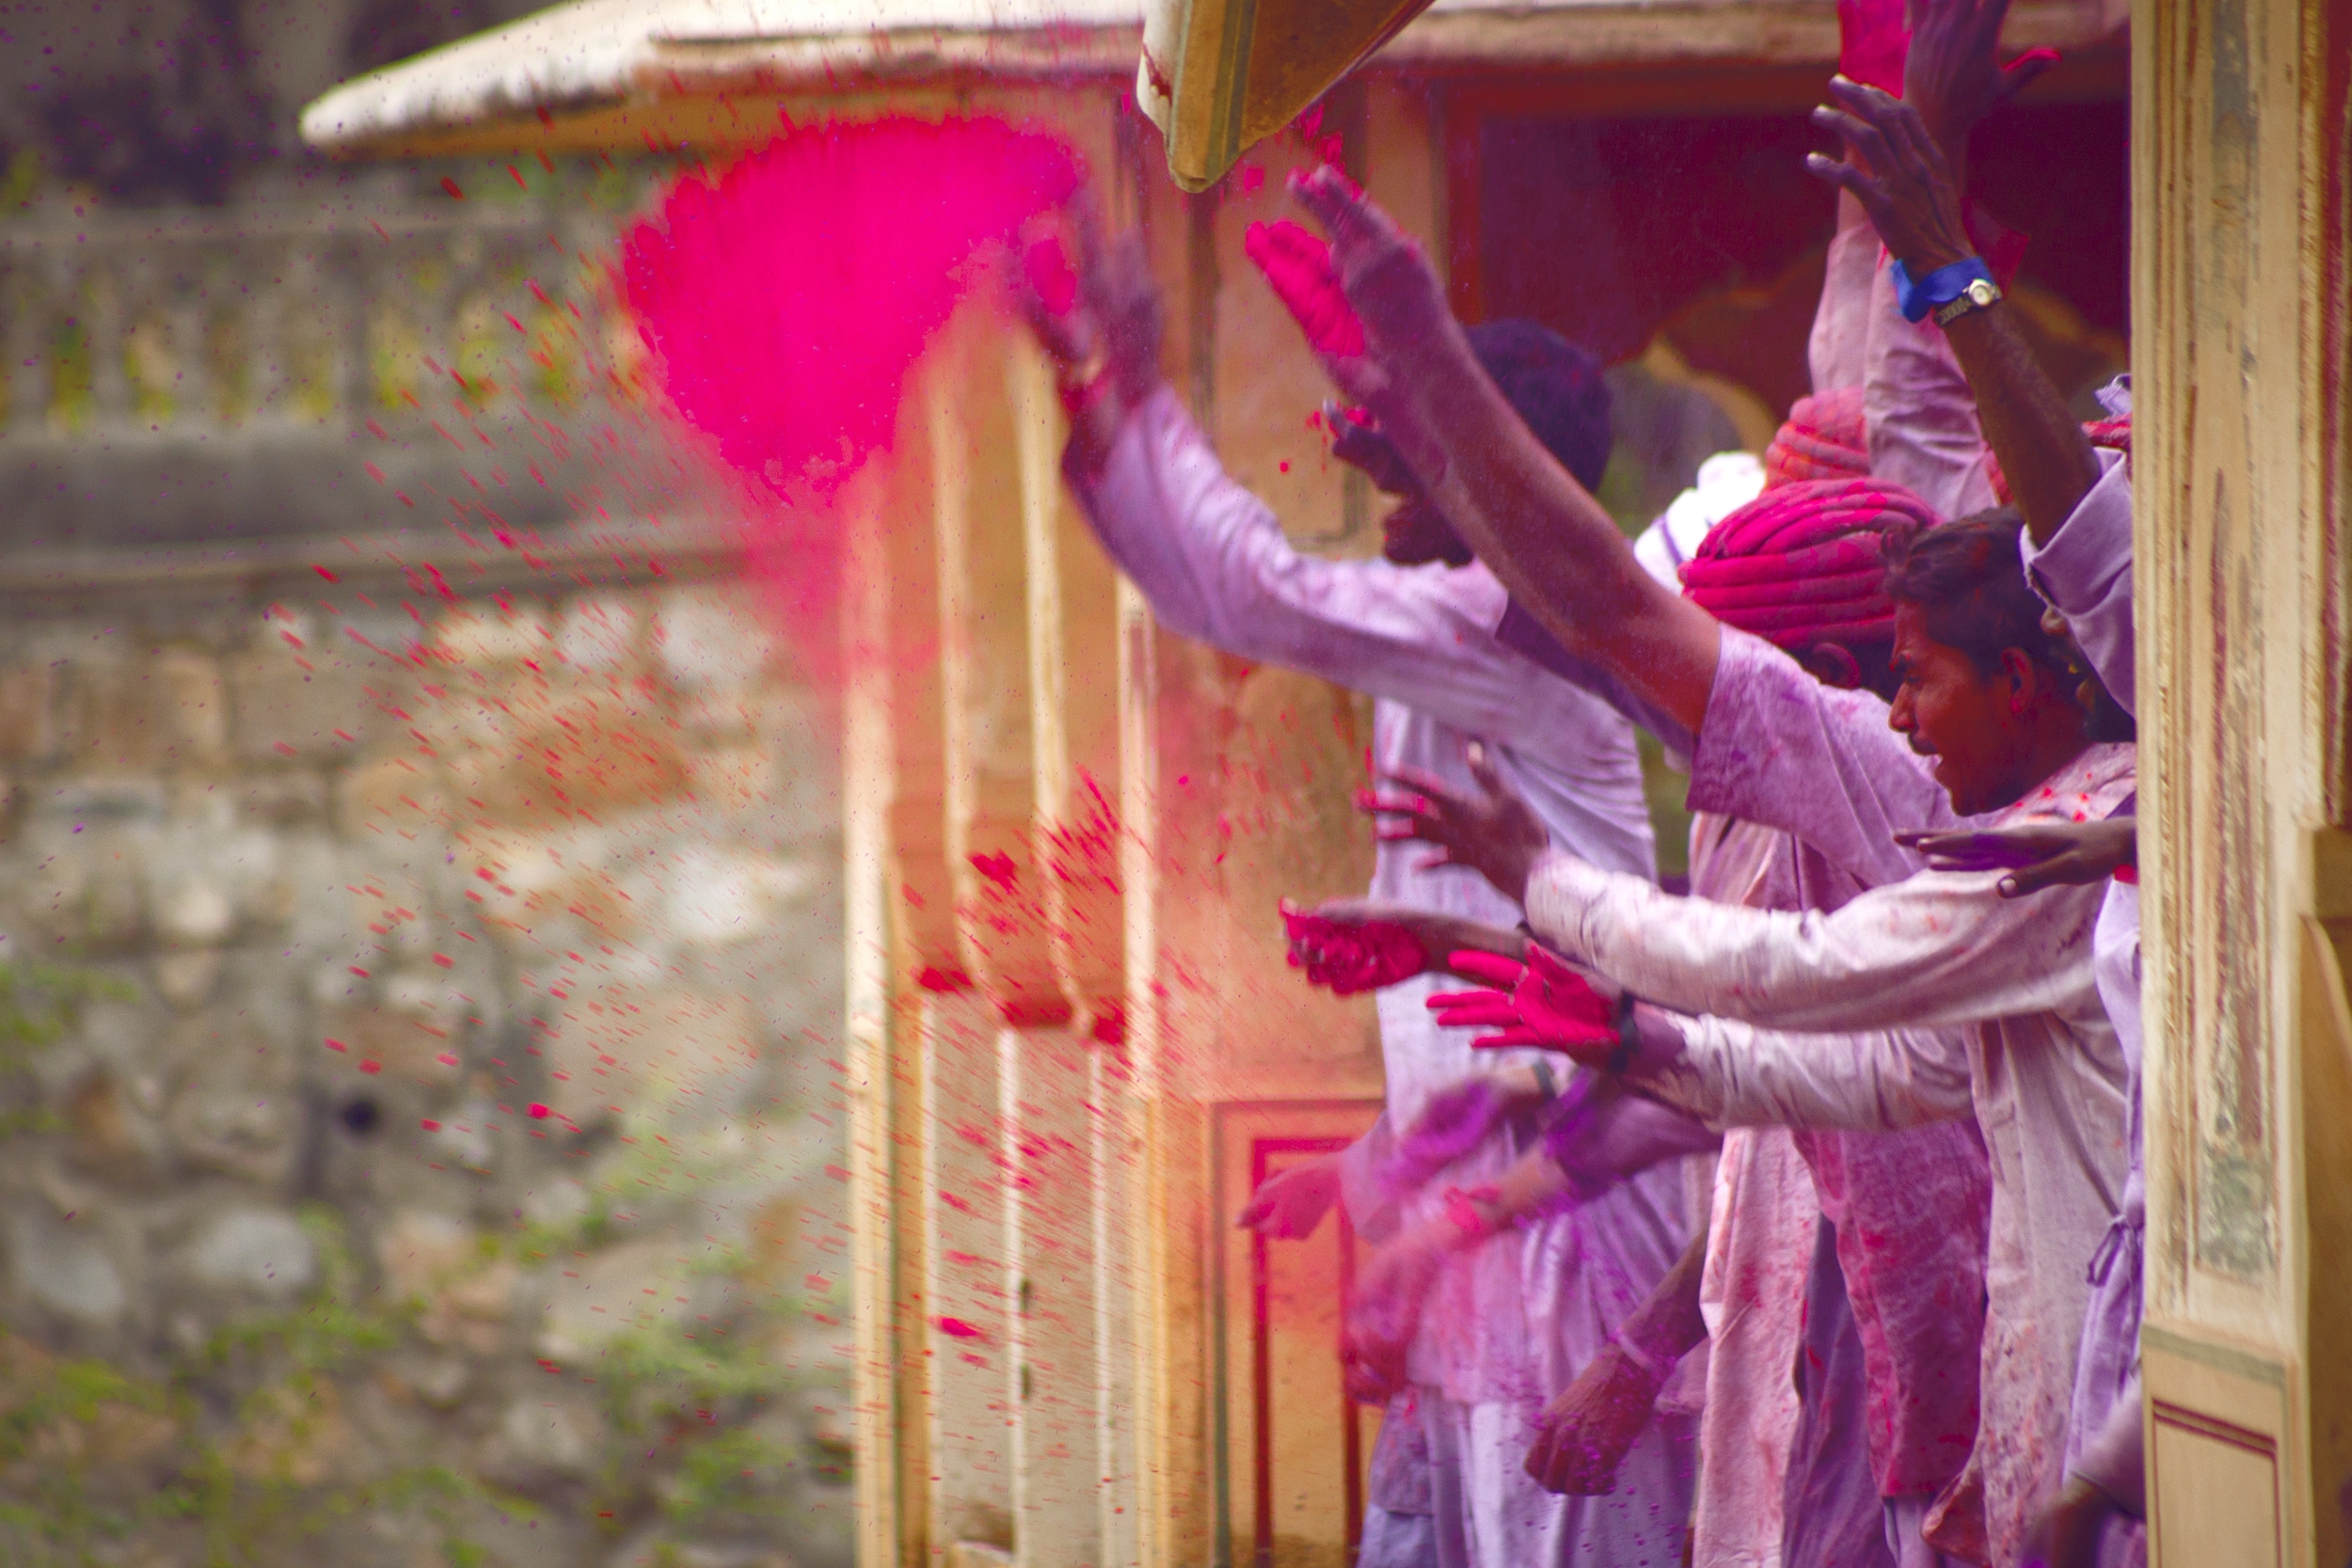 holi festival of colors